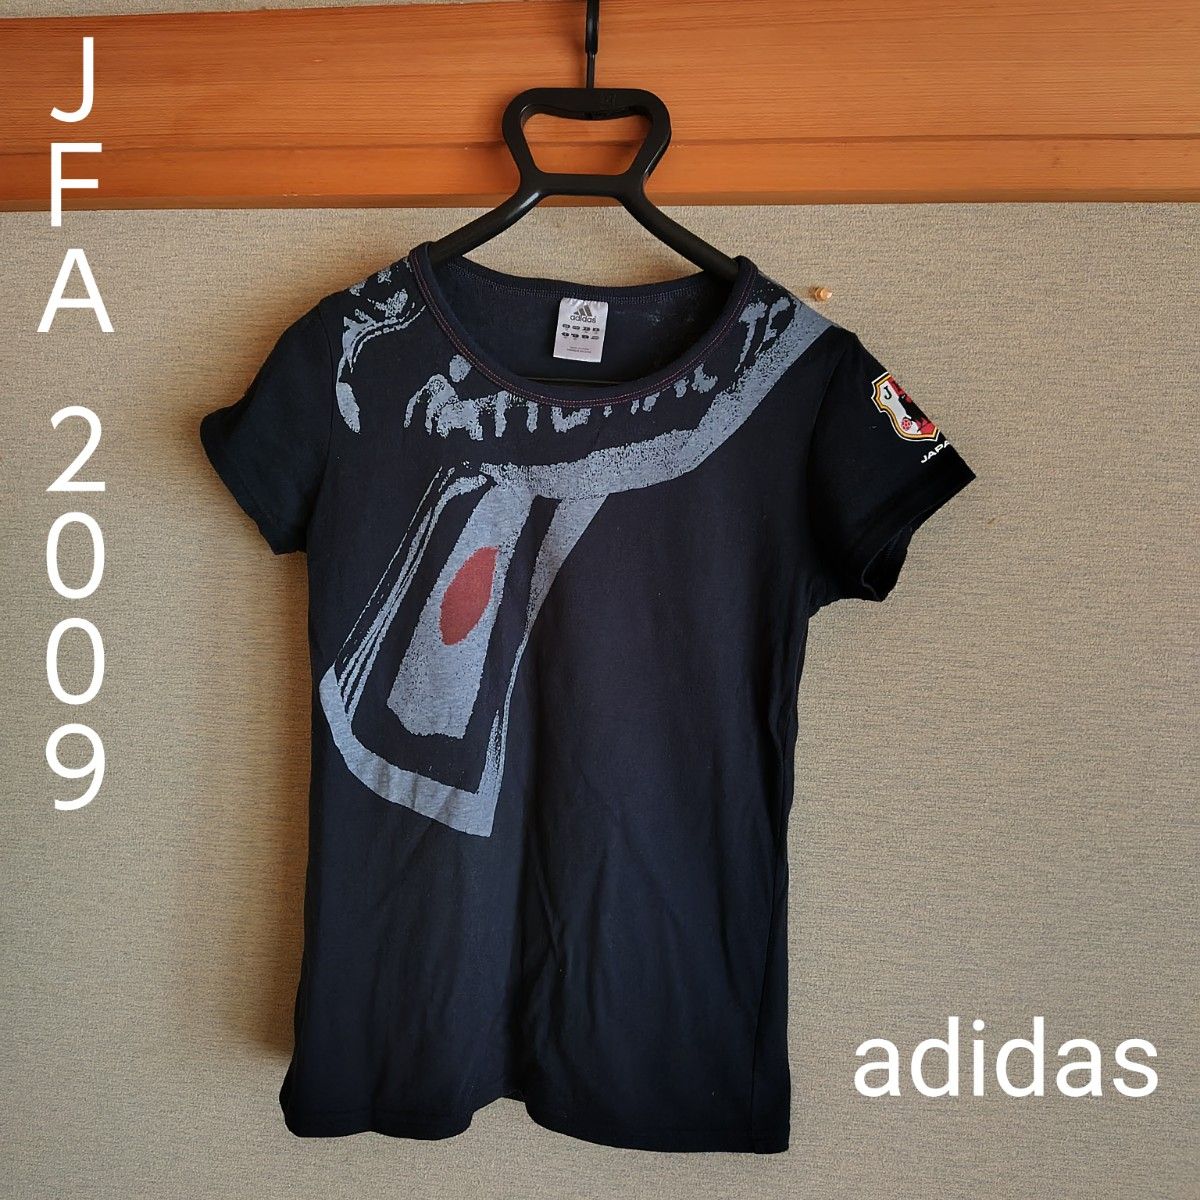 adidas JAF2009